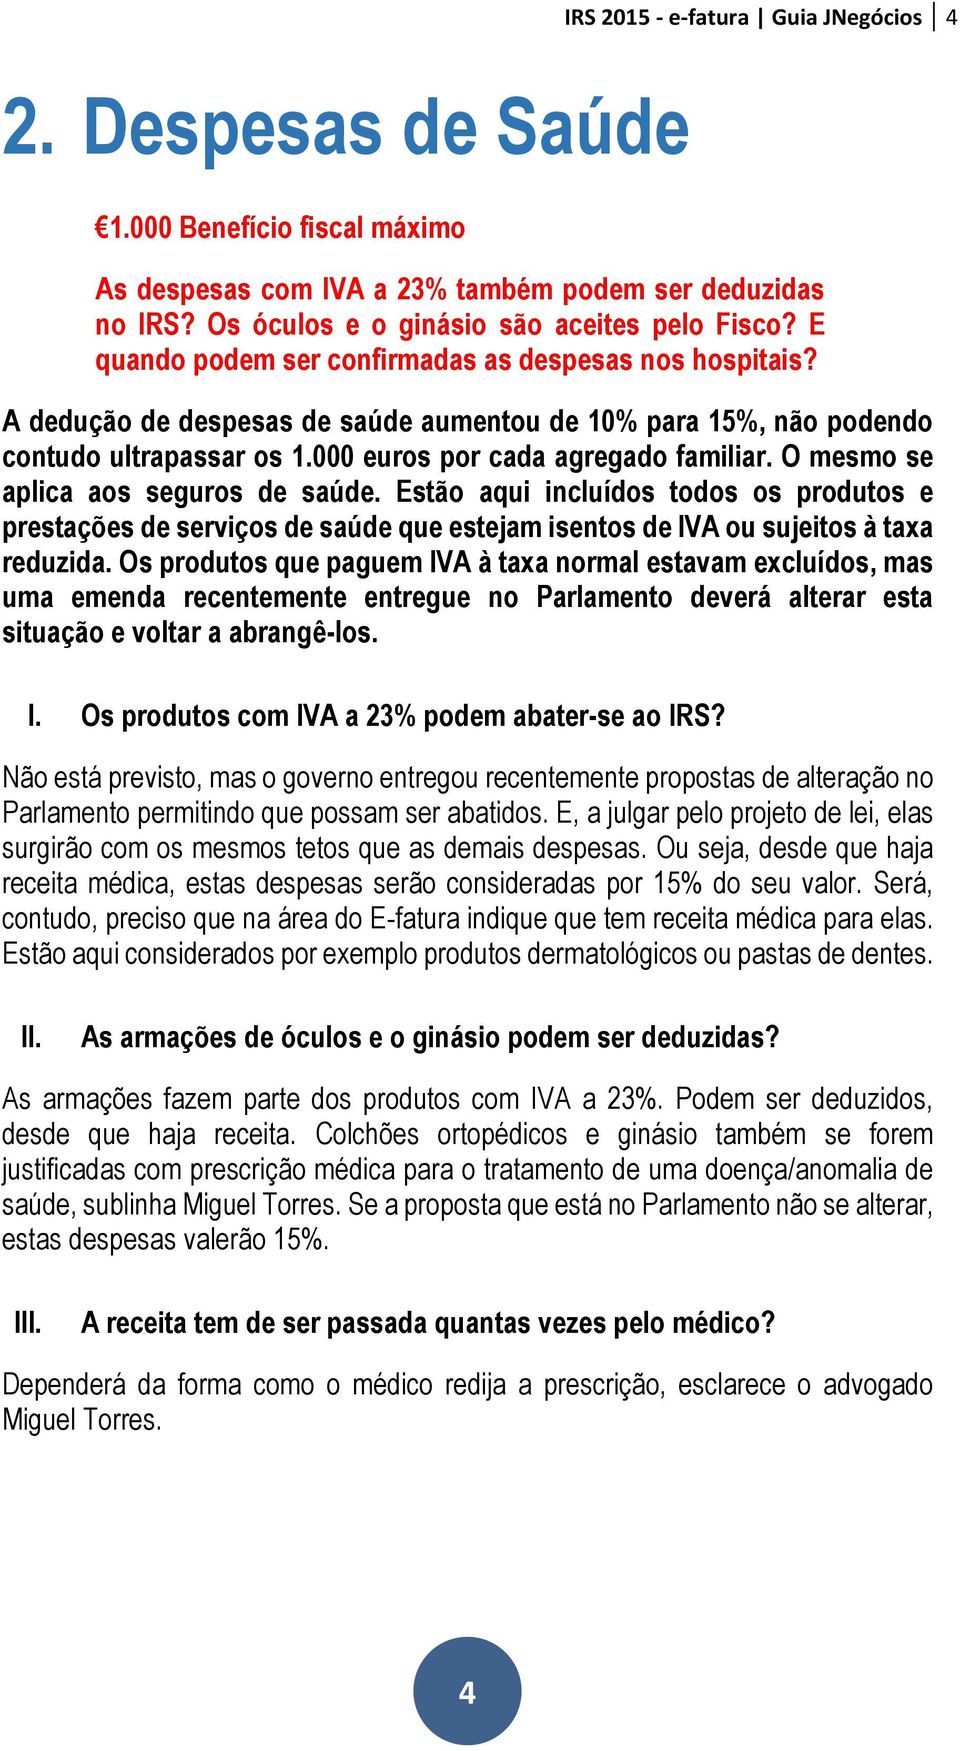 IRS E-FATURA. Perguntas e Respostas GUIA JNEGÓCIOS - PDF Free Download